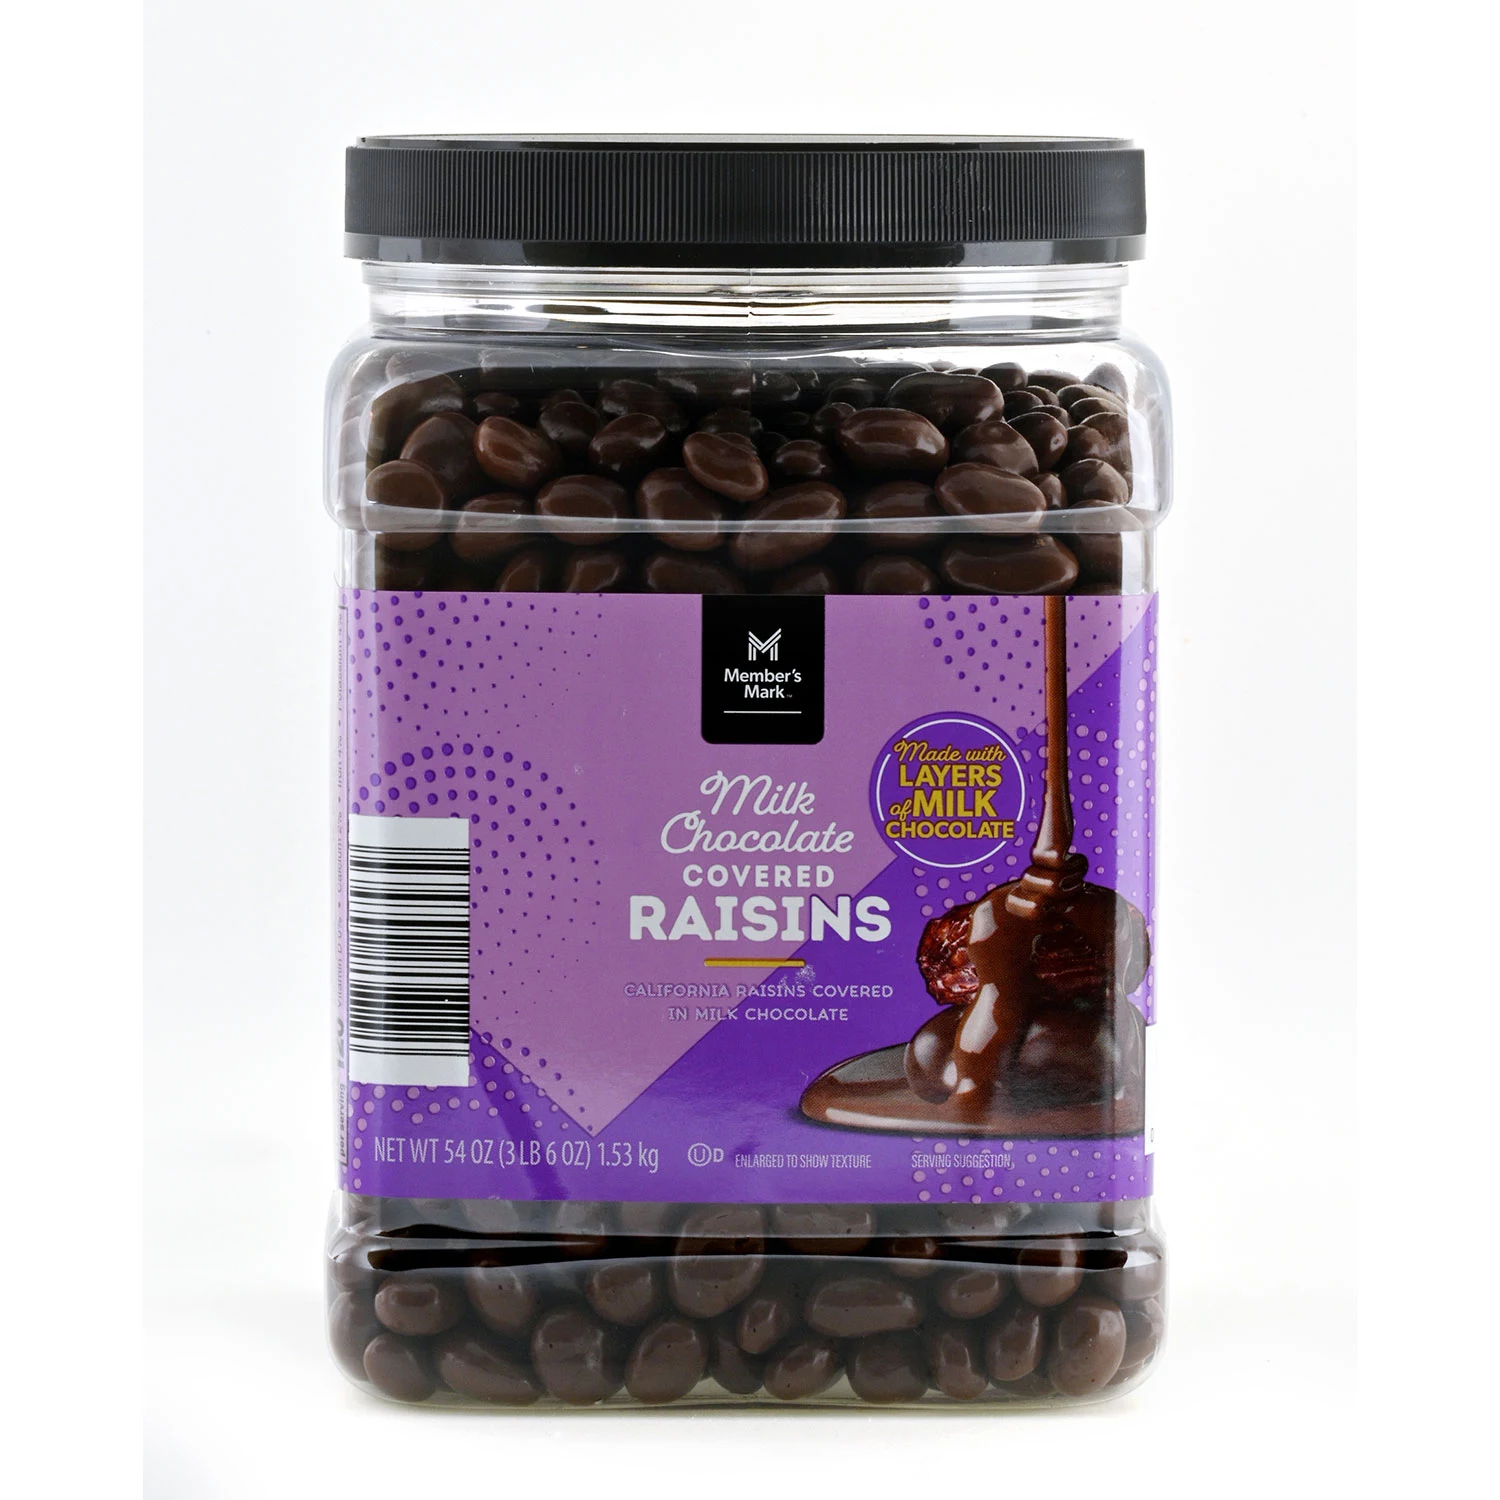 Member's Mark Chocolate Raisins